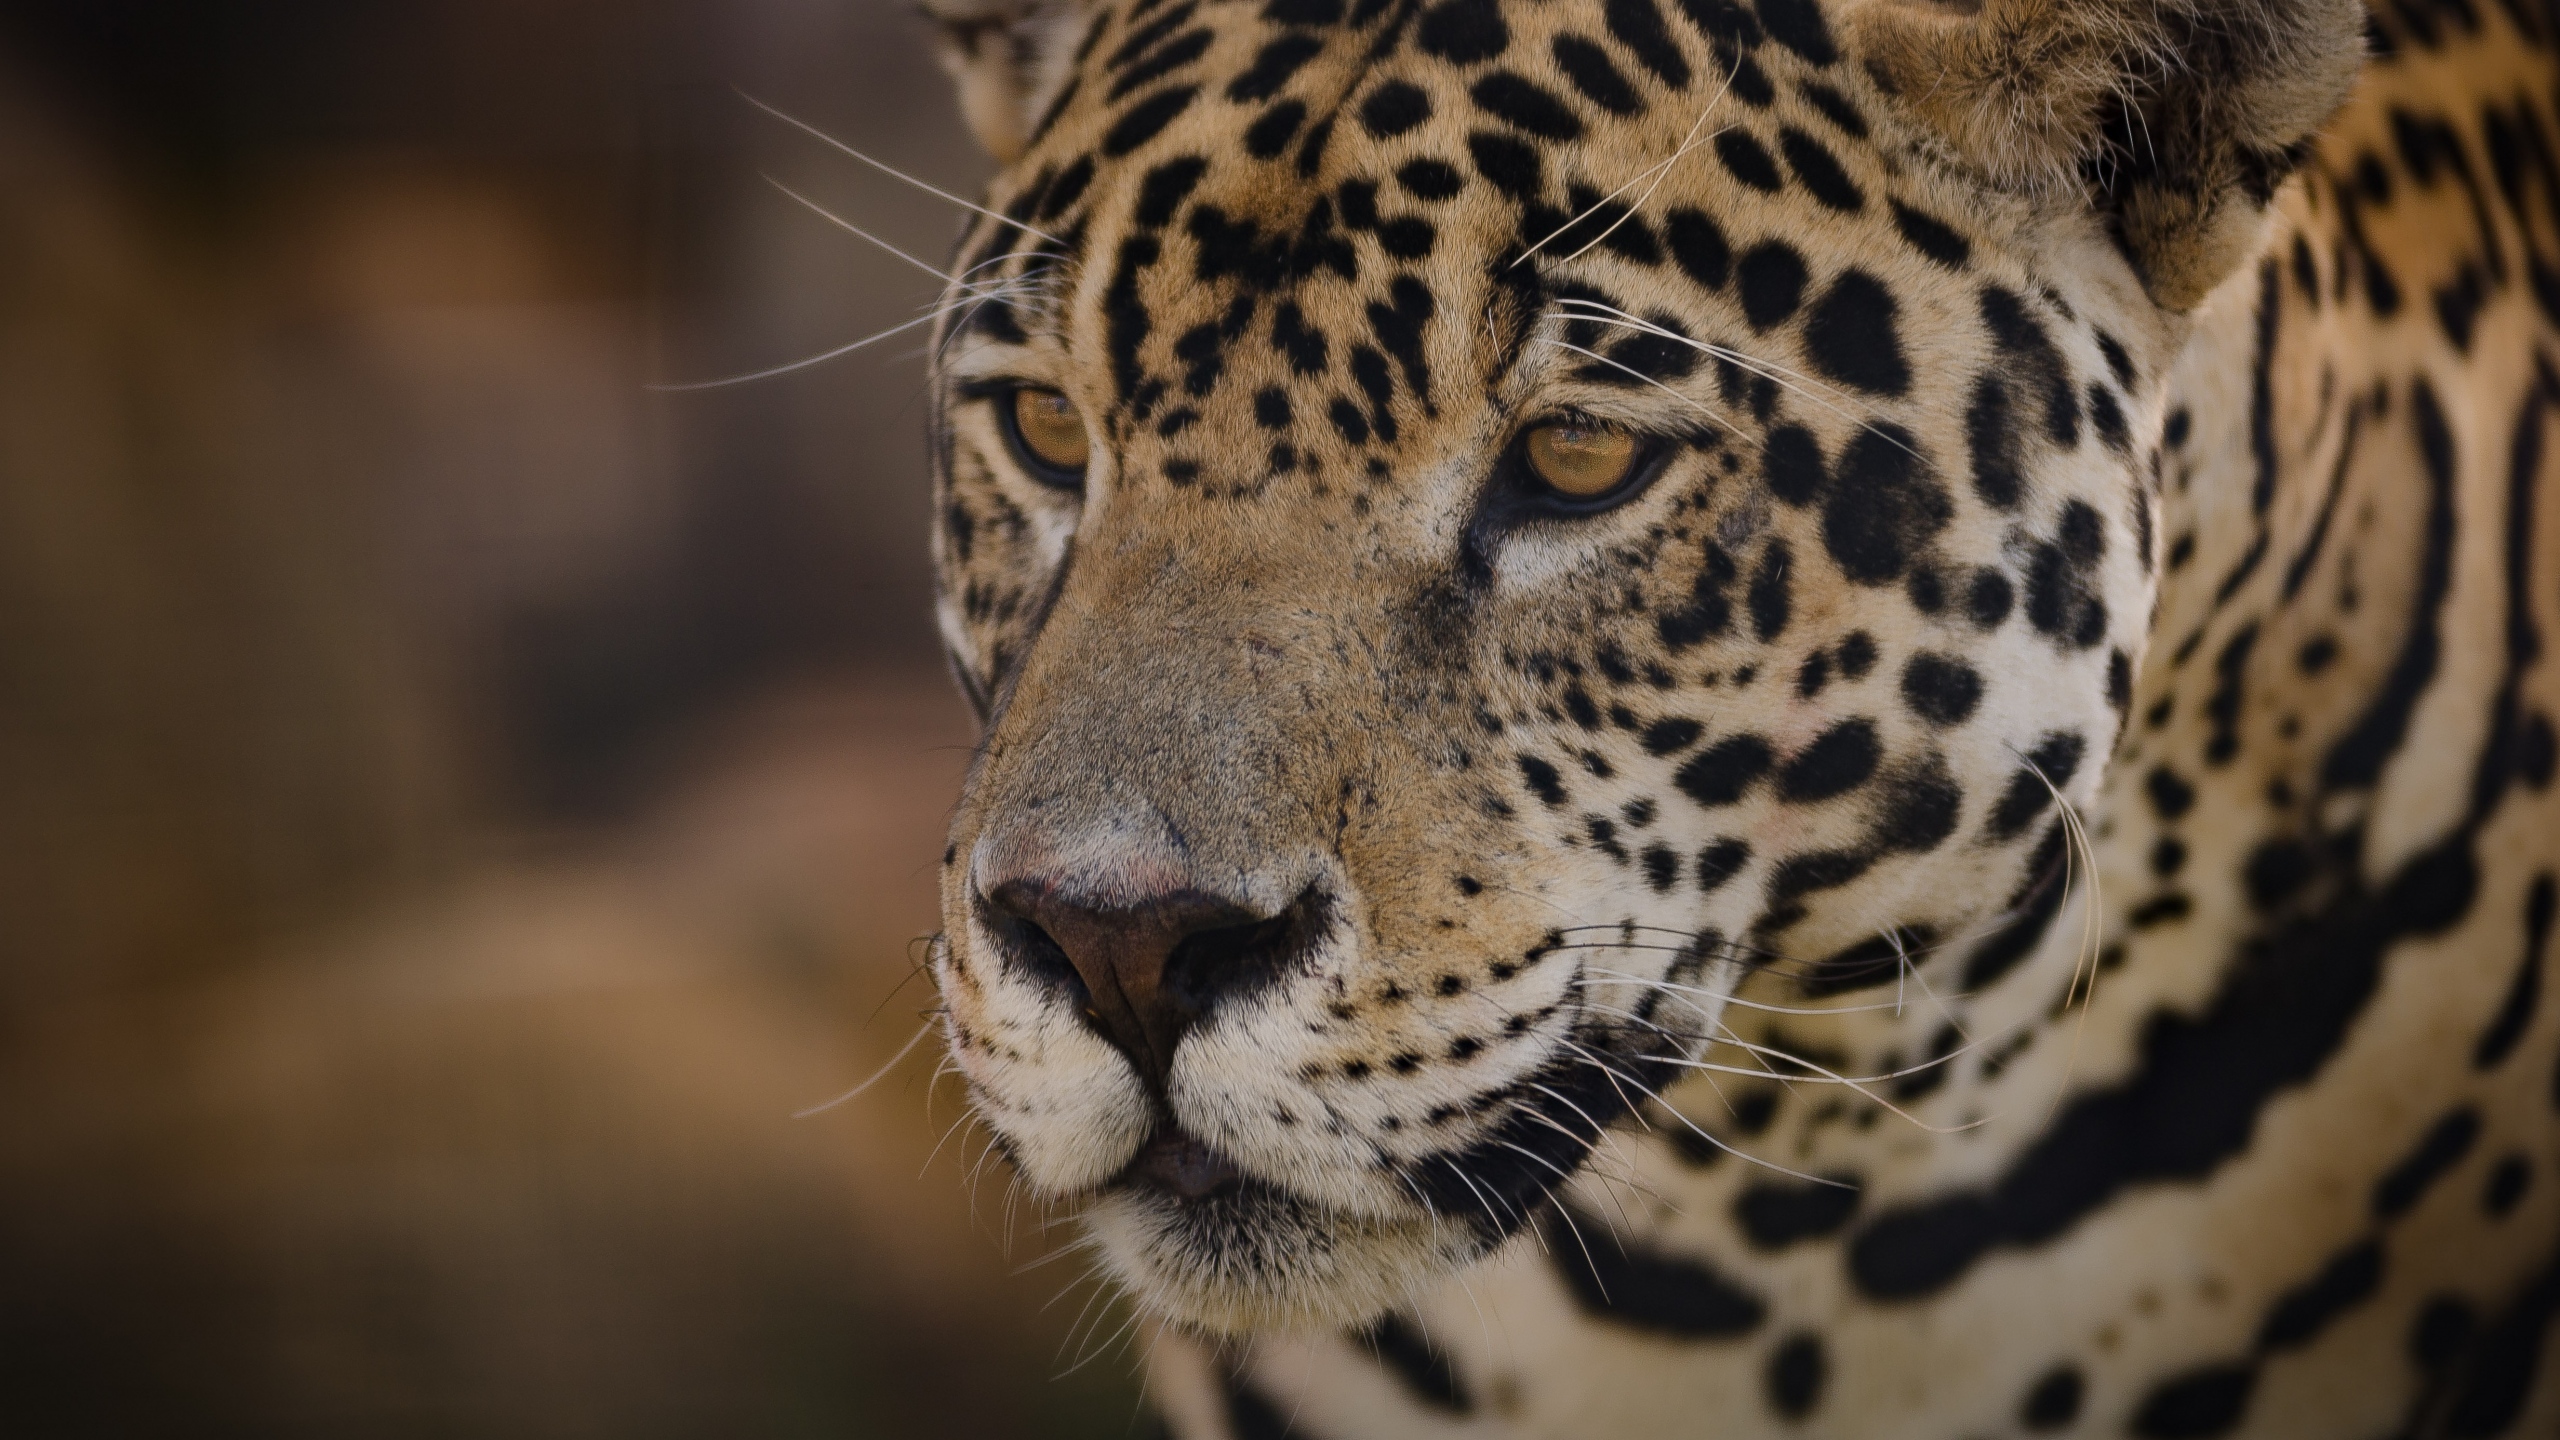 General 2560x1440 nature wildlife muzzles feline jaguars big cats mammals